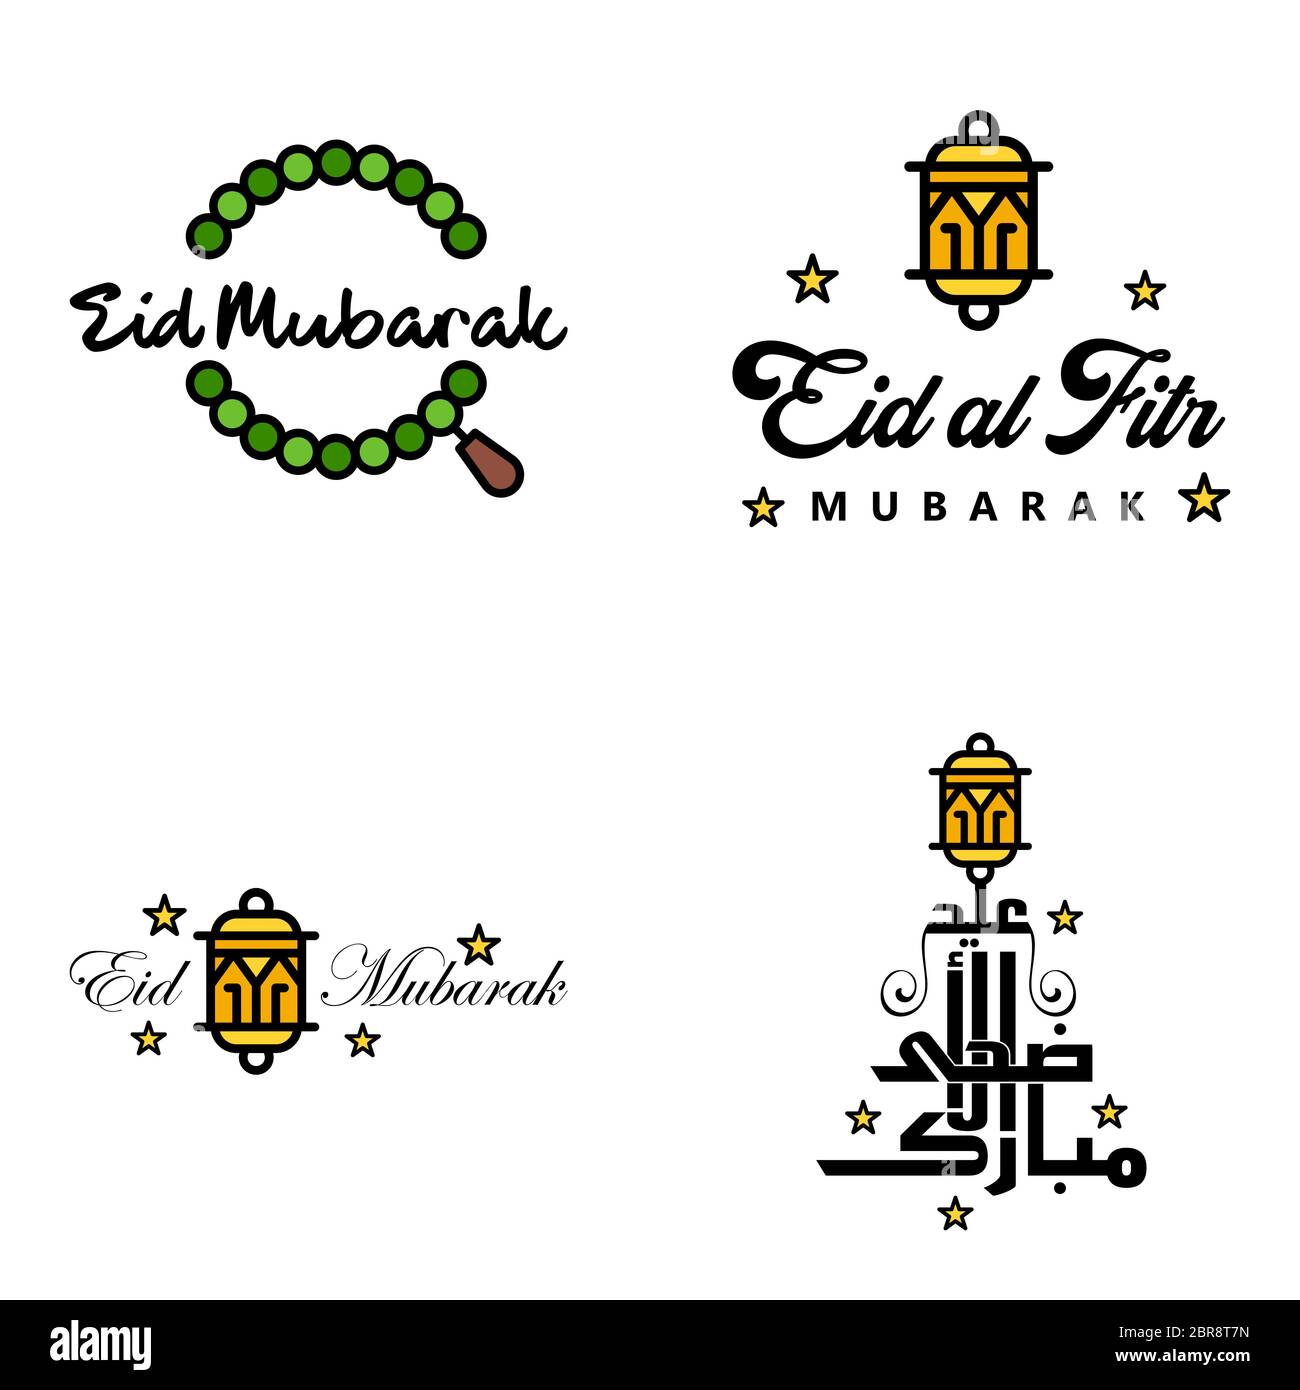 Vektor Grußkarte für Eid Mubarak Design Hängelampen Gelber Halbmond Swirly Brush Schriftbild Packung mit 4 Eid Mubarak Texte in Arabisch auf White Backgro Stock Vektor